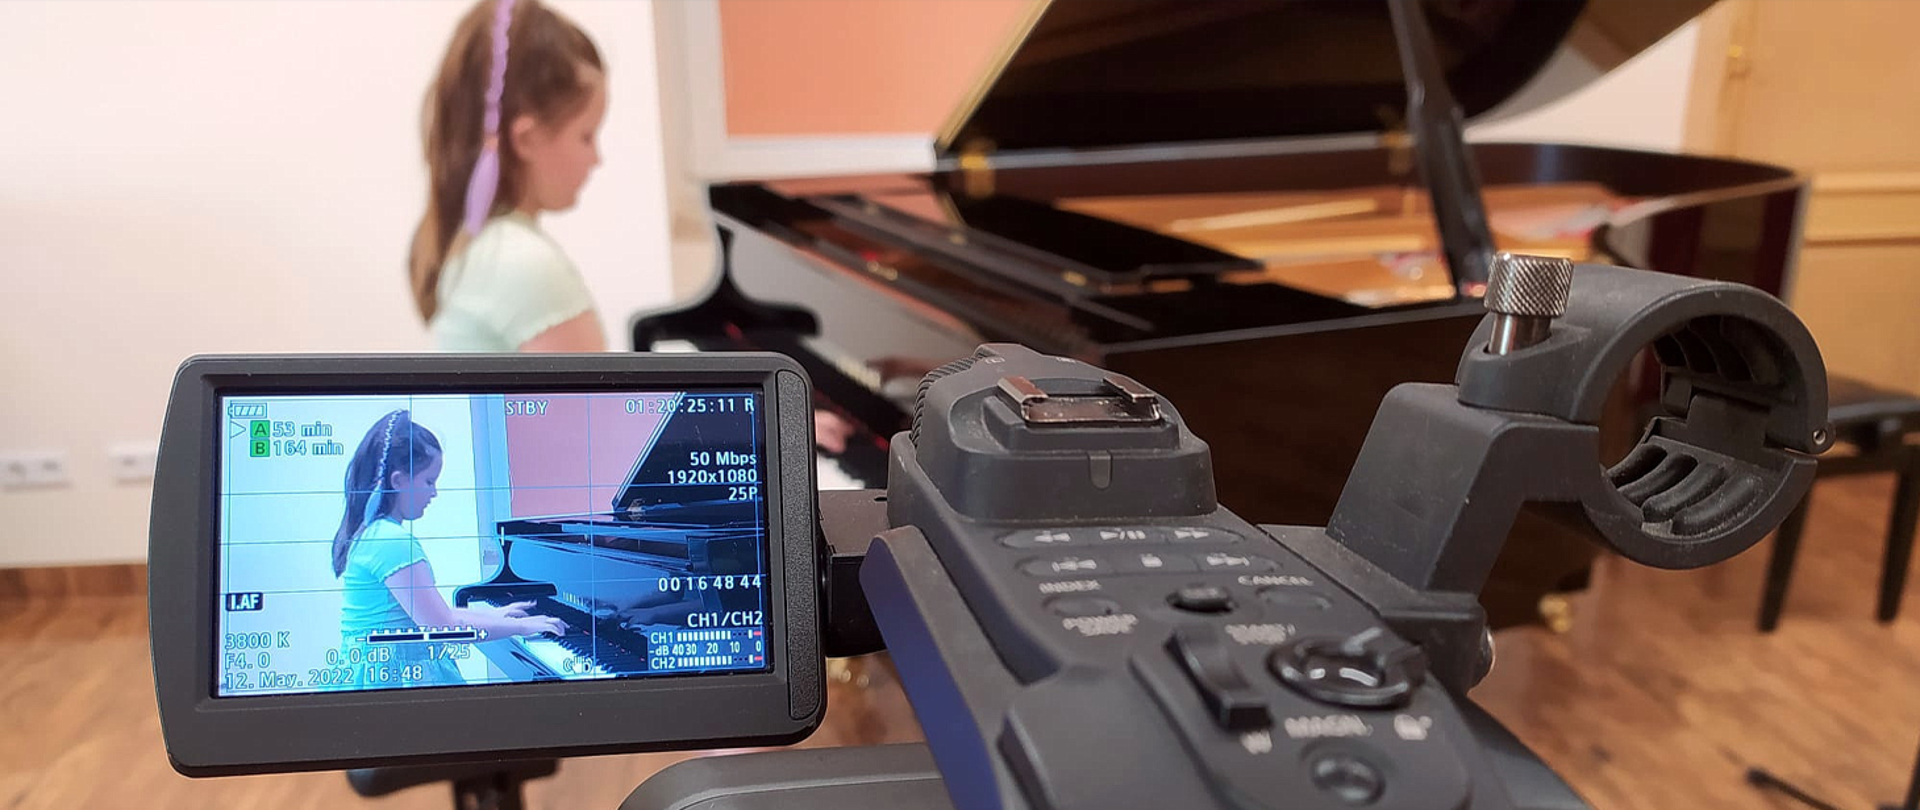 Na zdjęciu w tle rozmyty widok dziewczynki grającej na fortepianie, na pierwszym planie ostry obraz ekranu LCD kamery telewizyjnej i fragmentu samej kamery nagrywającej widoczną w tle dziewczynkę.